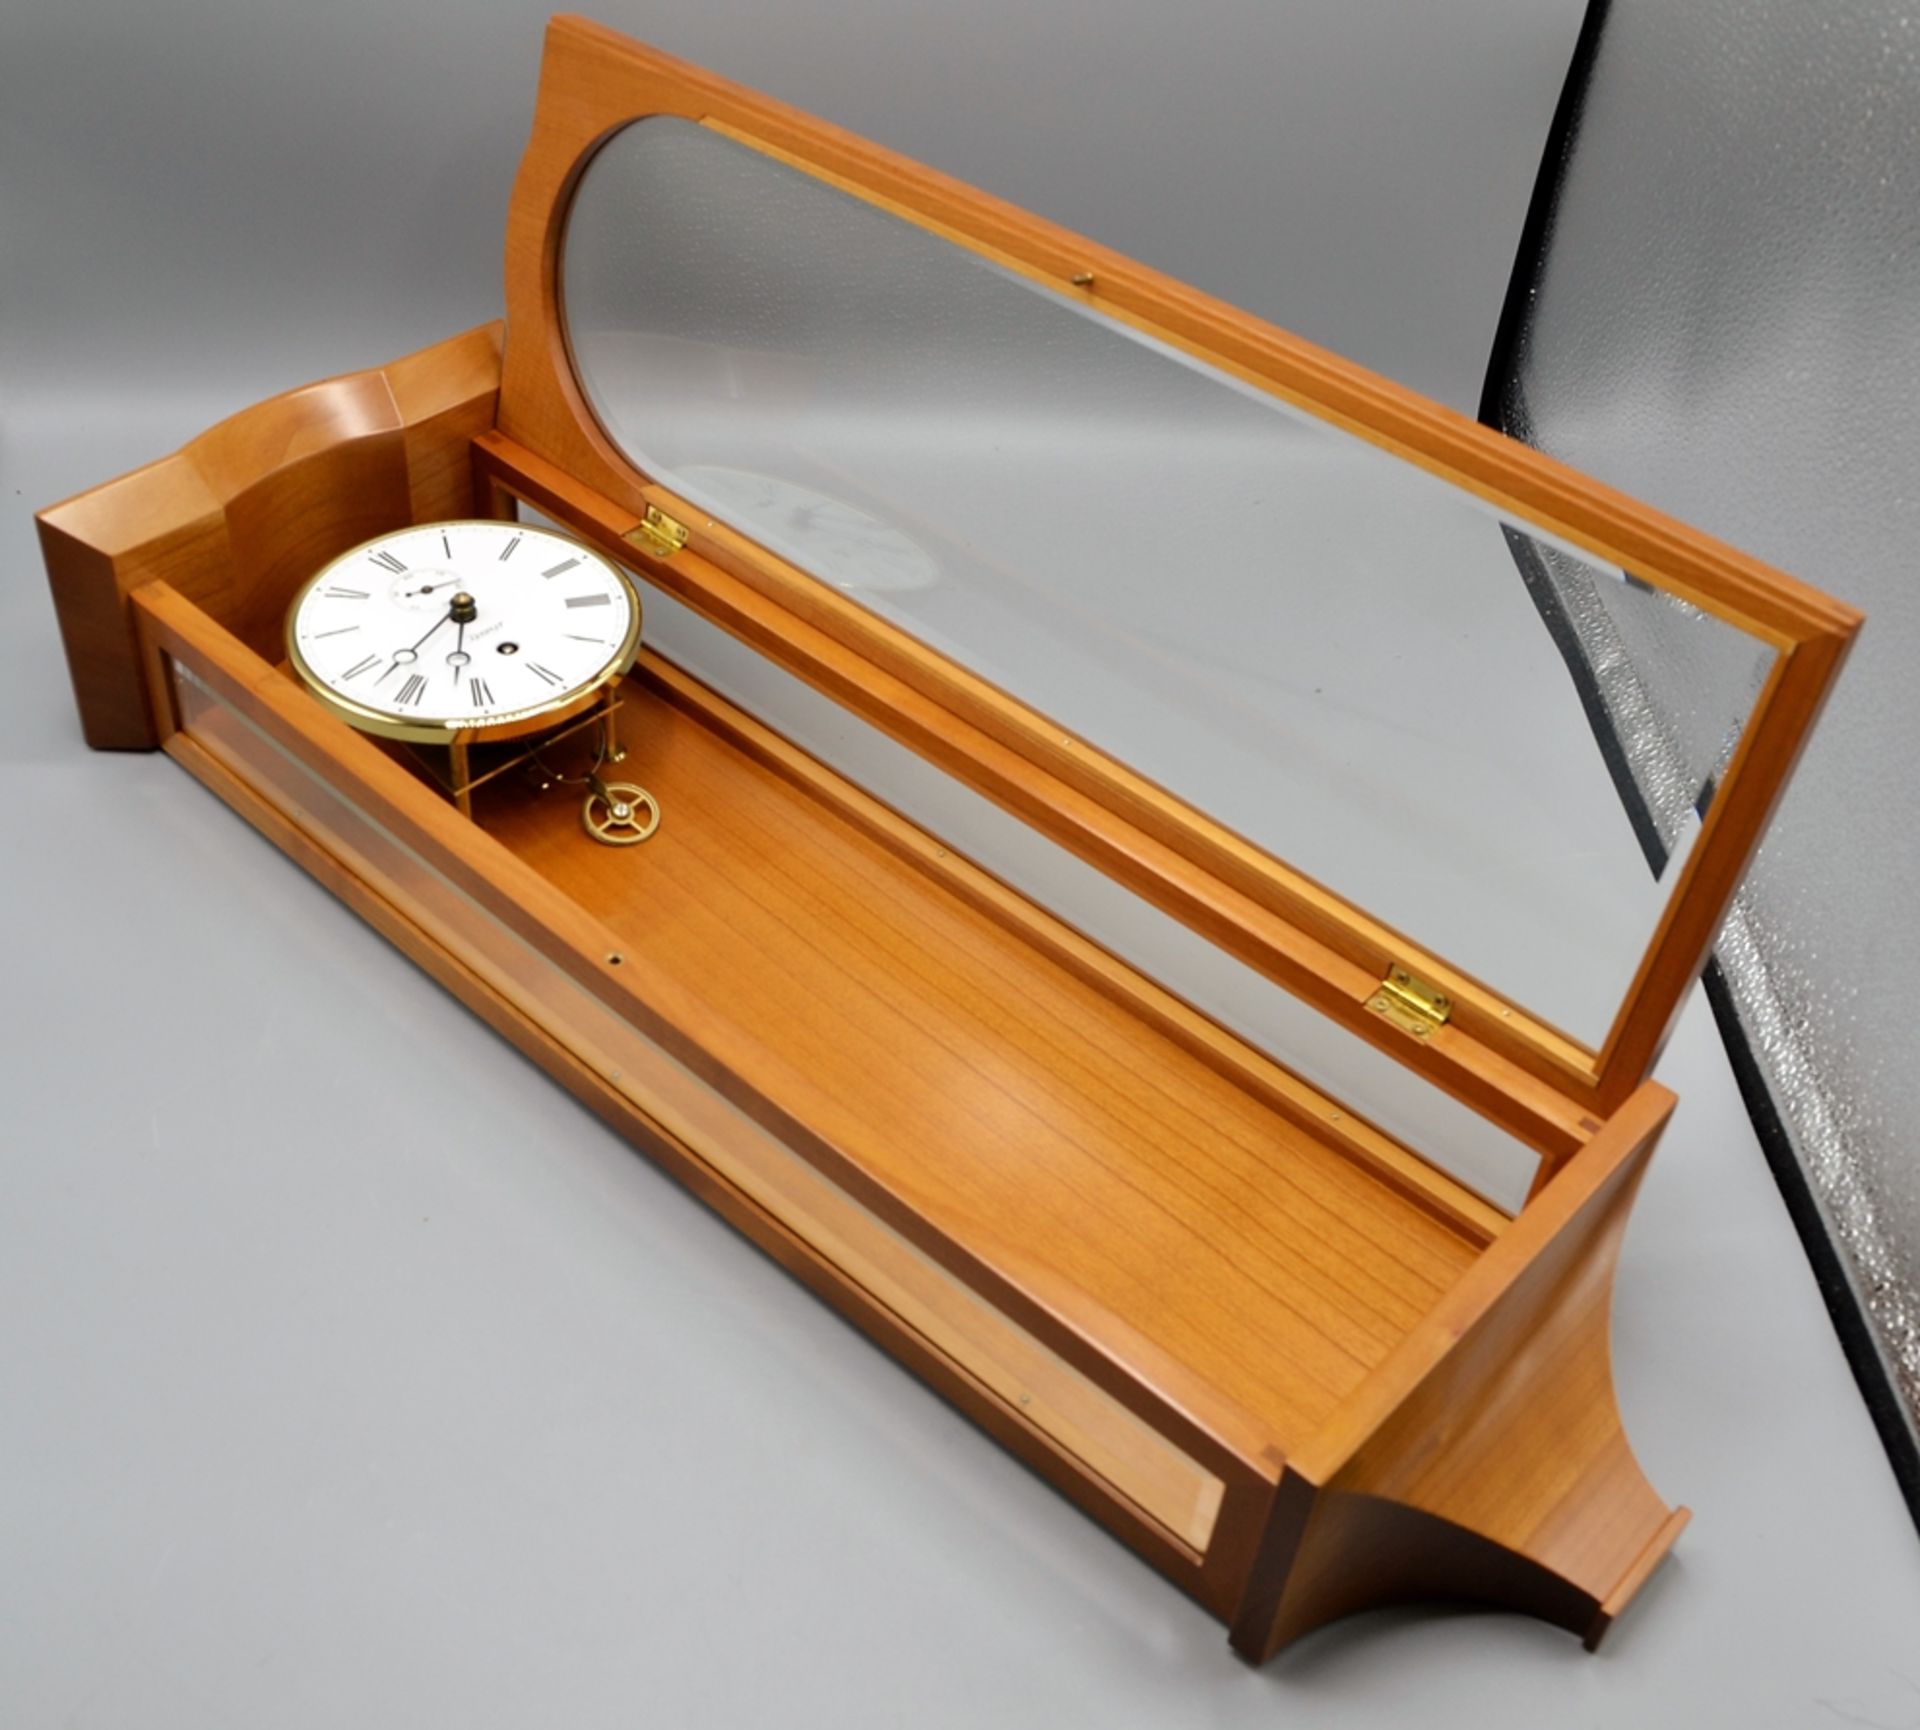 Kieninger Miniatur Seilzugregulator Wanduhr ca. 54 cm, die Uhr läuft an (Ganggenauigkeit u. Laufdau - Bild 3 aus 5